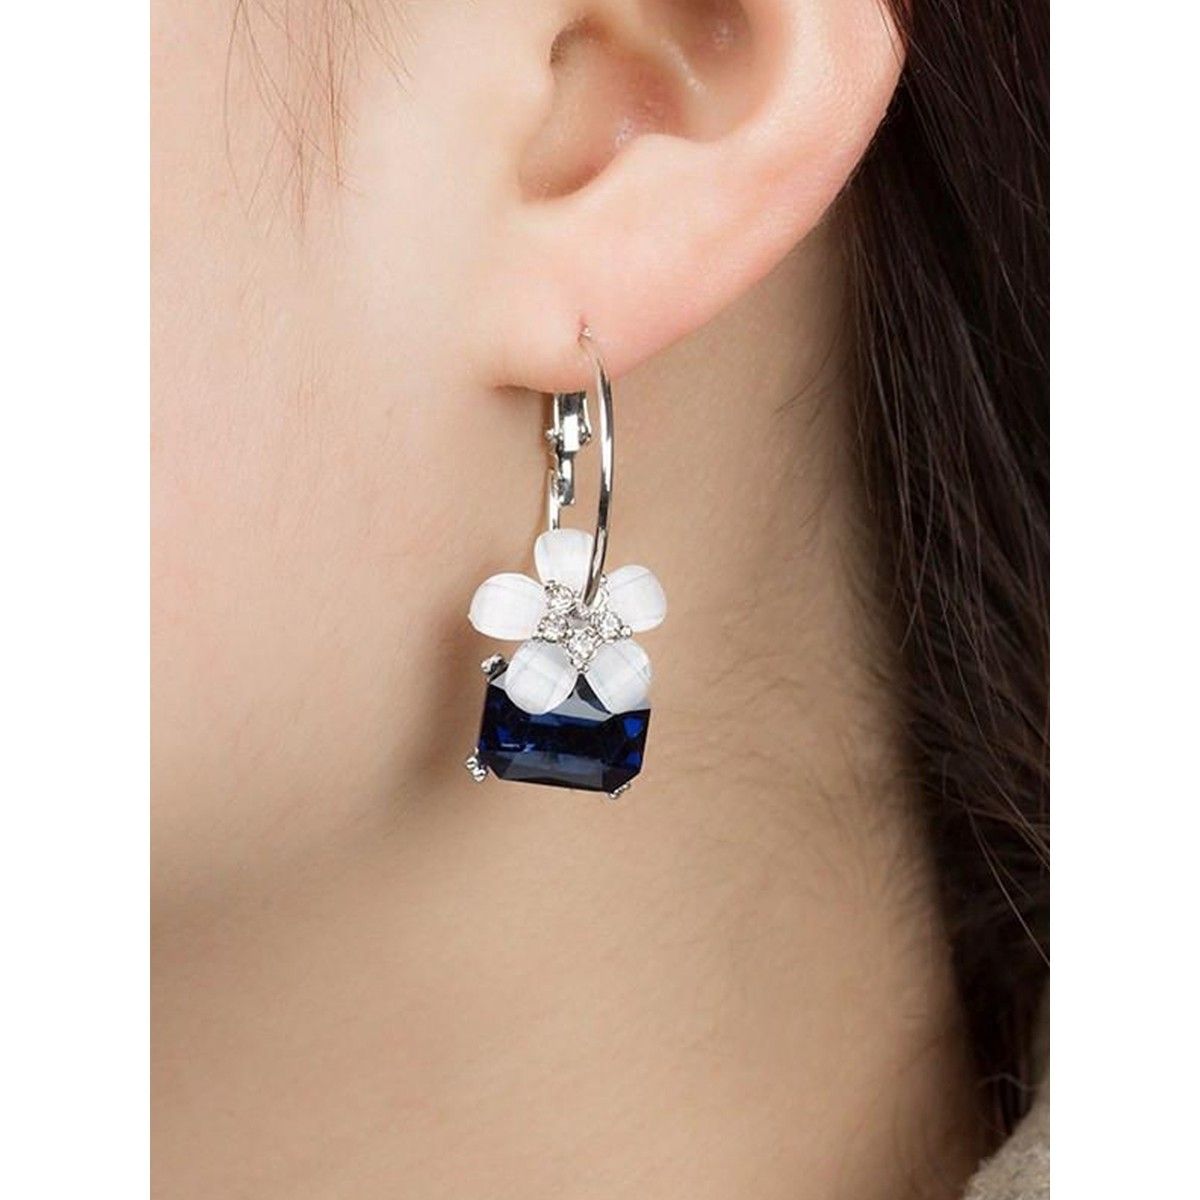 Chandelier Flower Earrings Hanging Long Earring Wedding  Etsy  Cute  jewelry Clay jewelry diy Pastel earrings